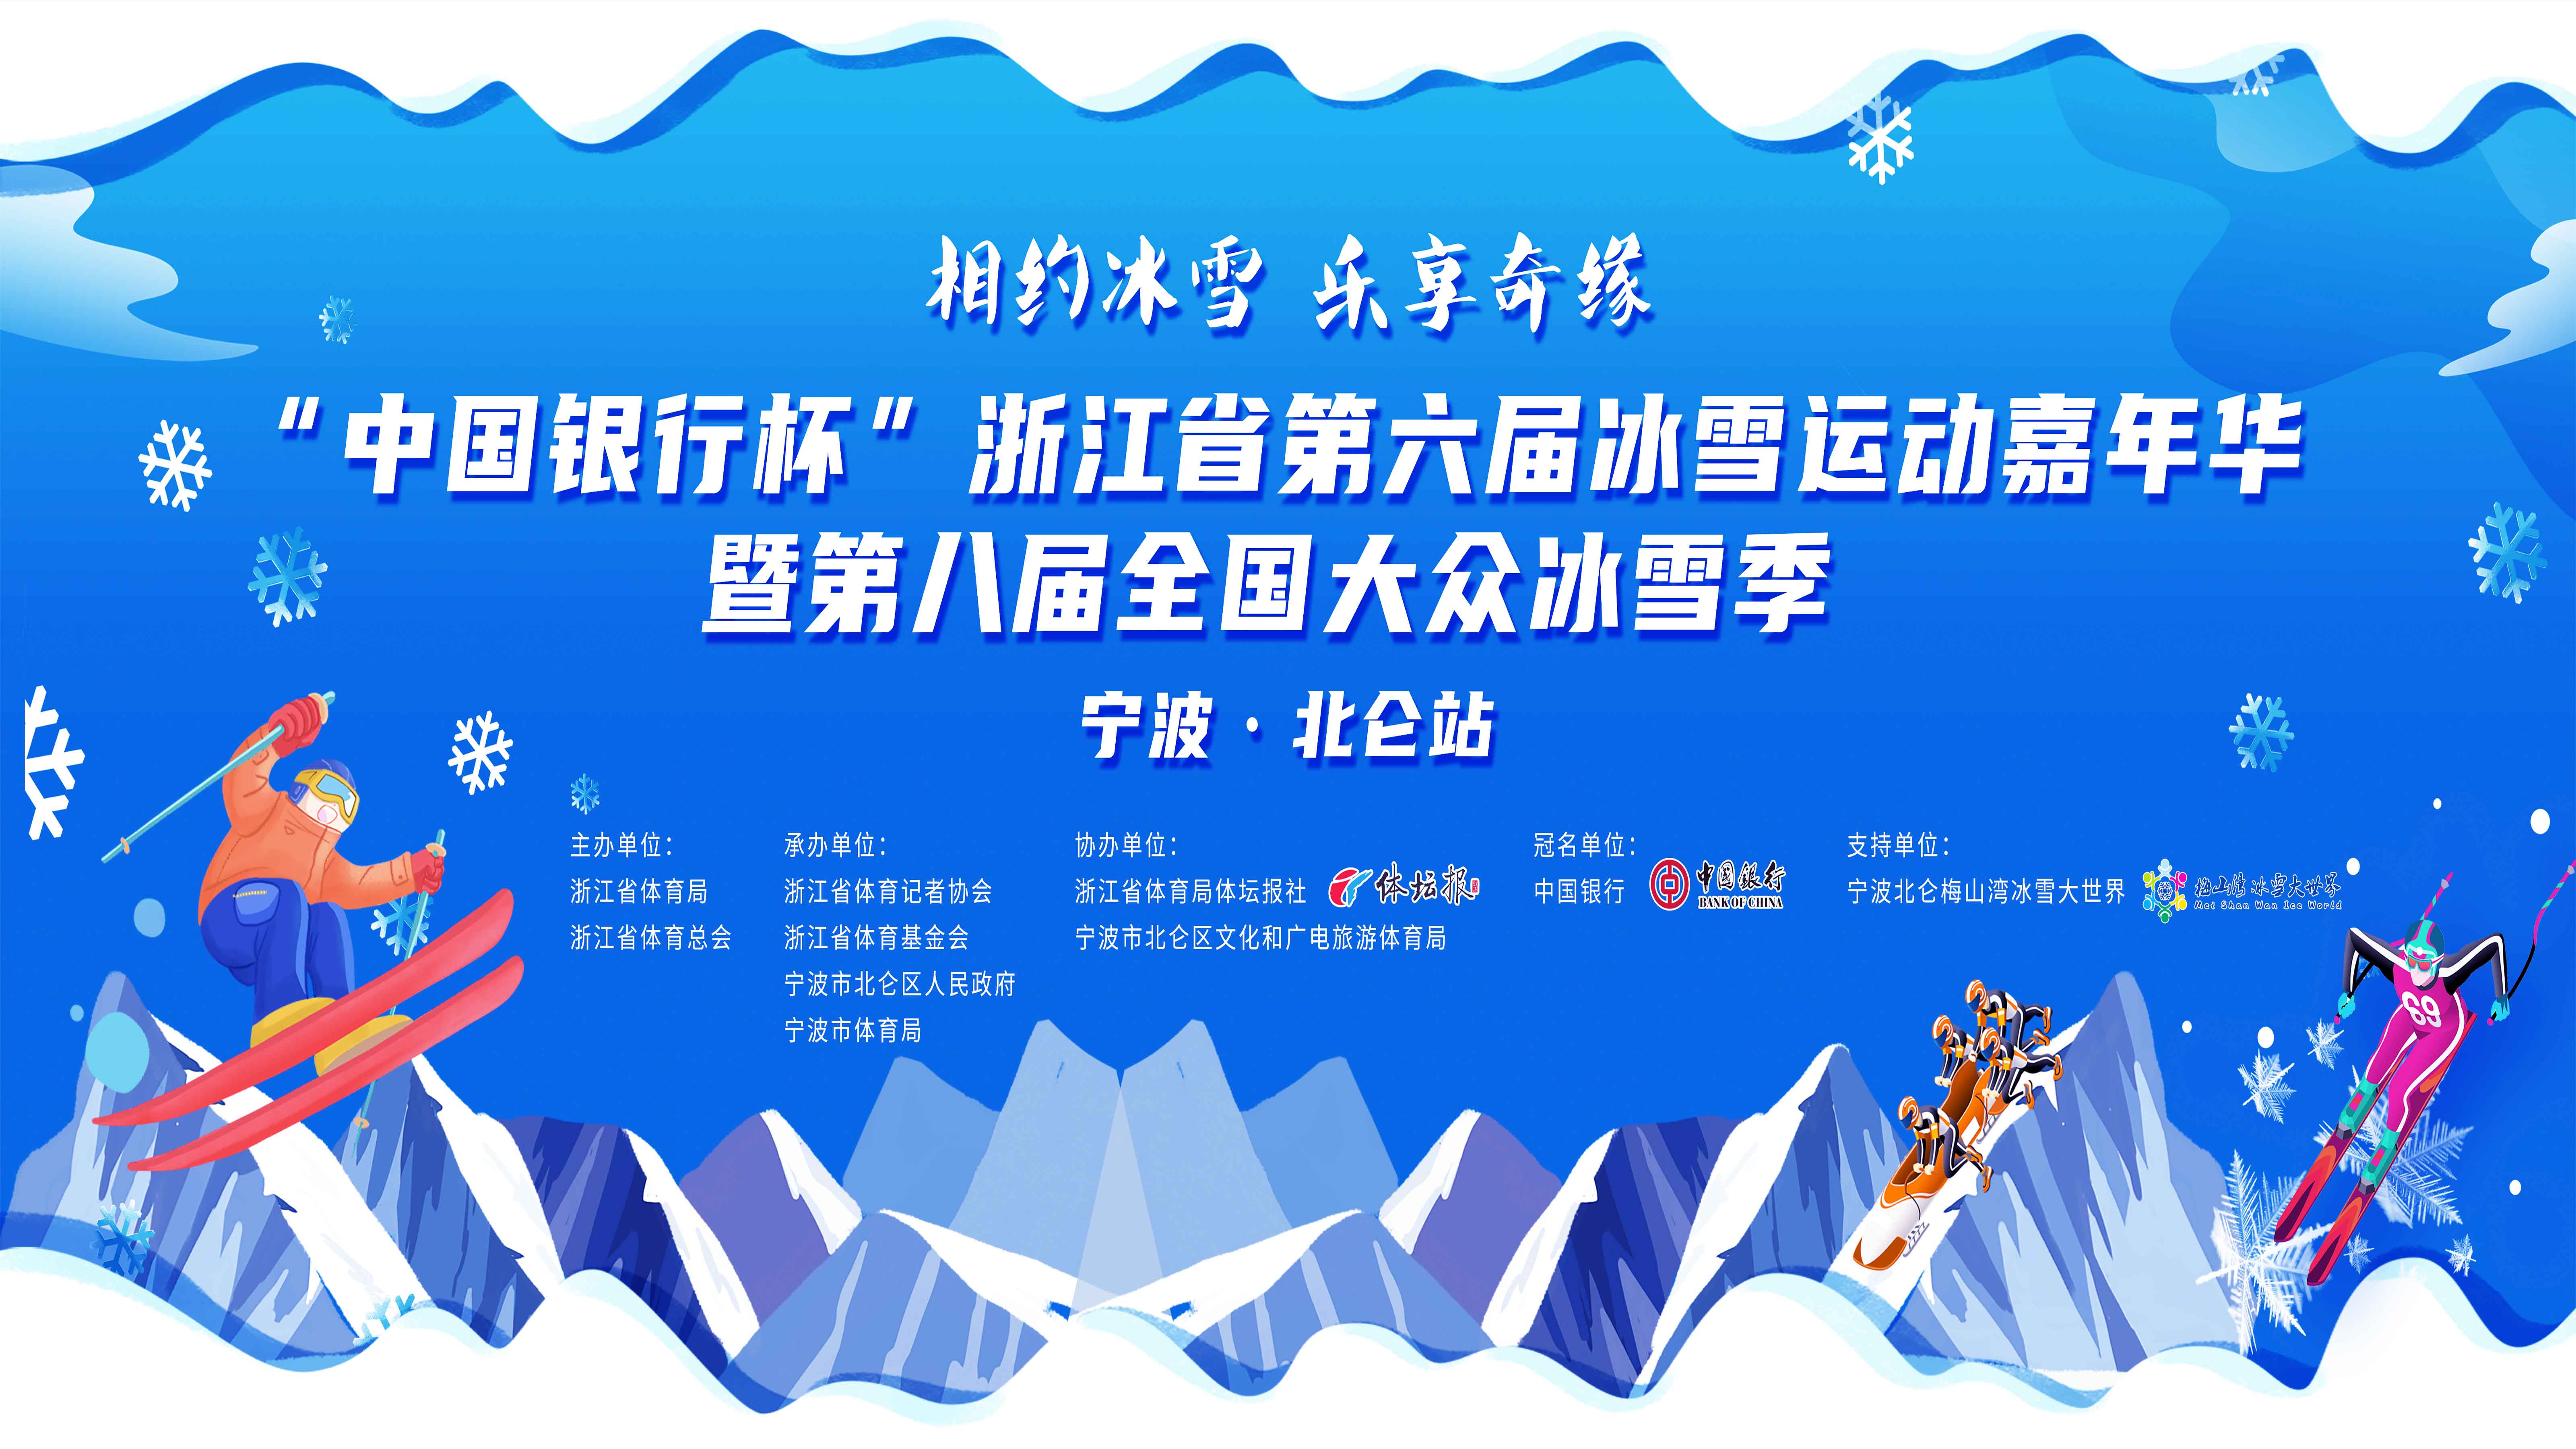 2022.6.25“中国银行杯”冰雪运动嘉年华